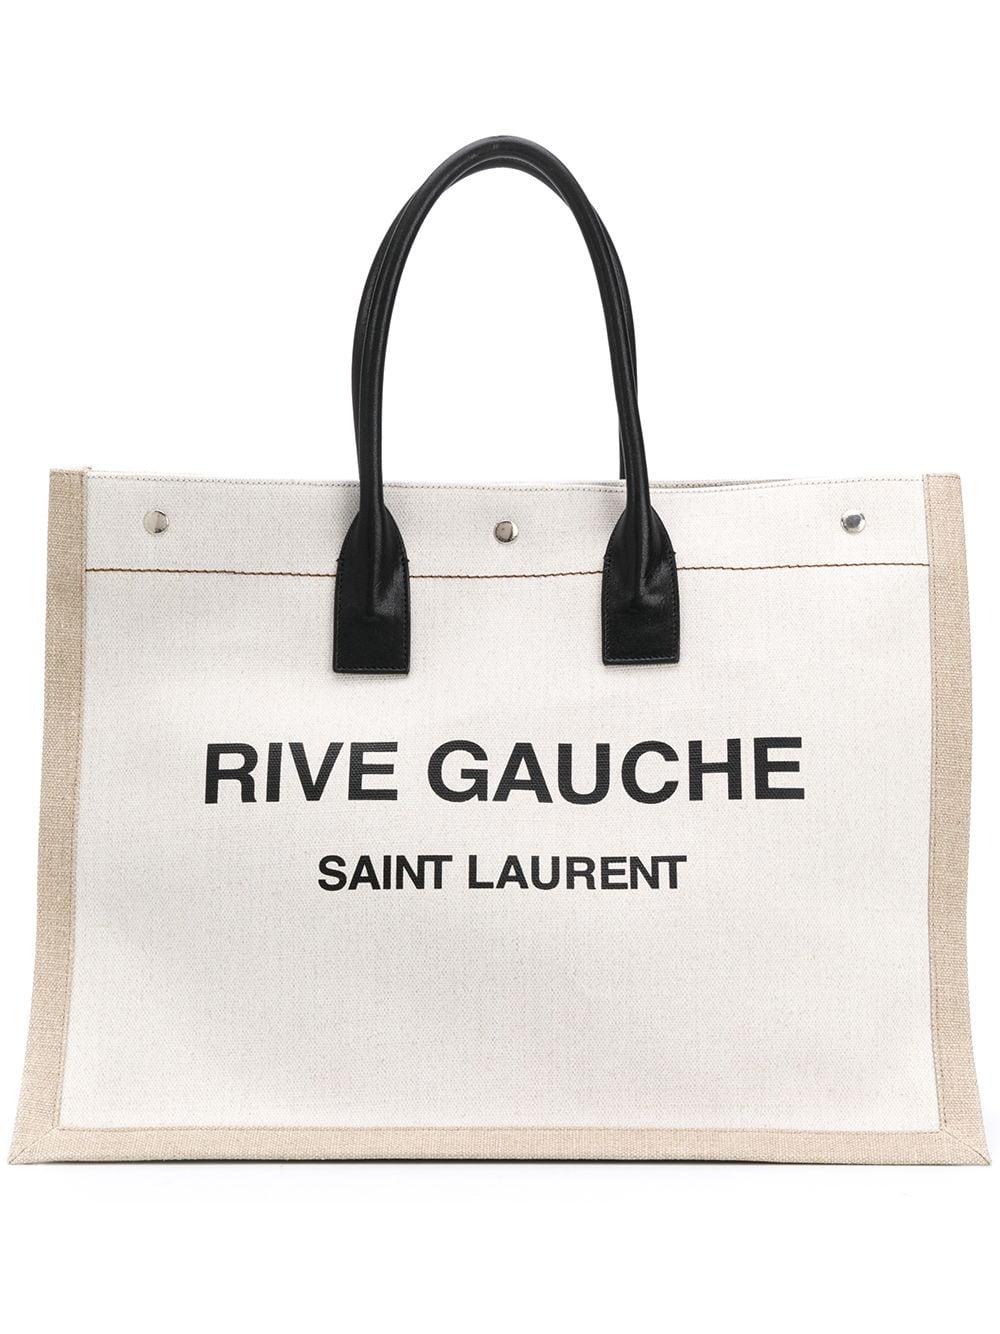 Saint Laurent Leather Rive Gauche Tote for Men - Lyst